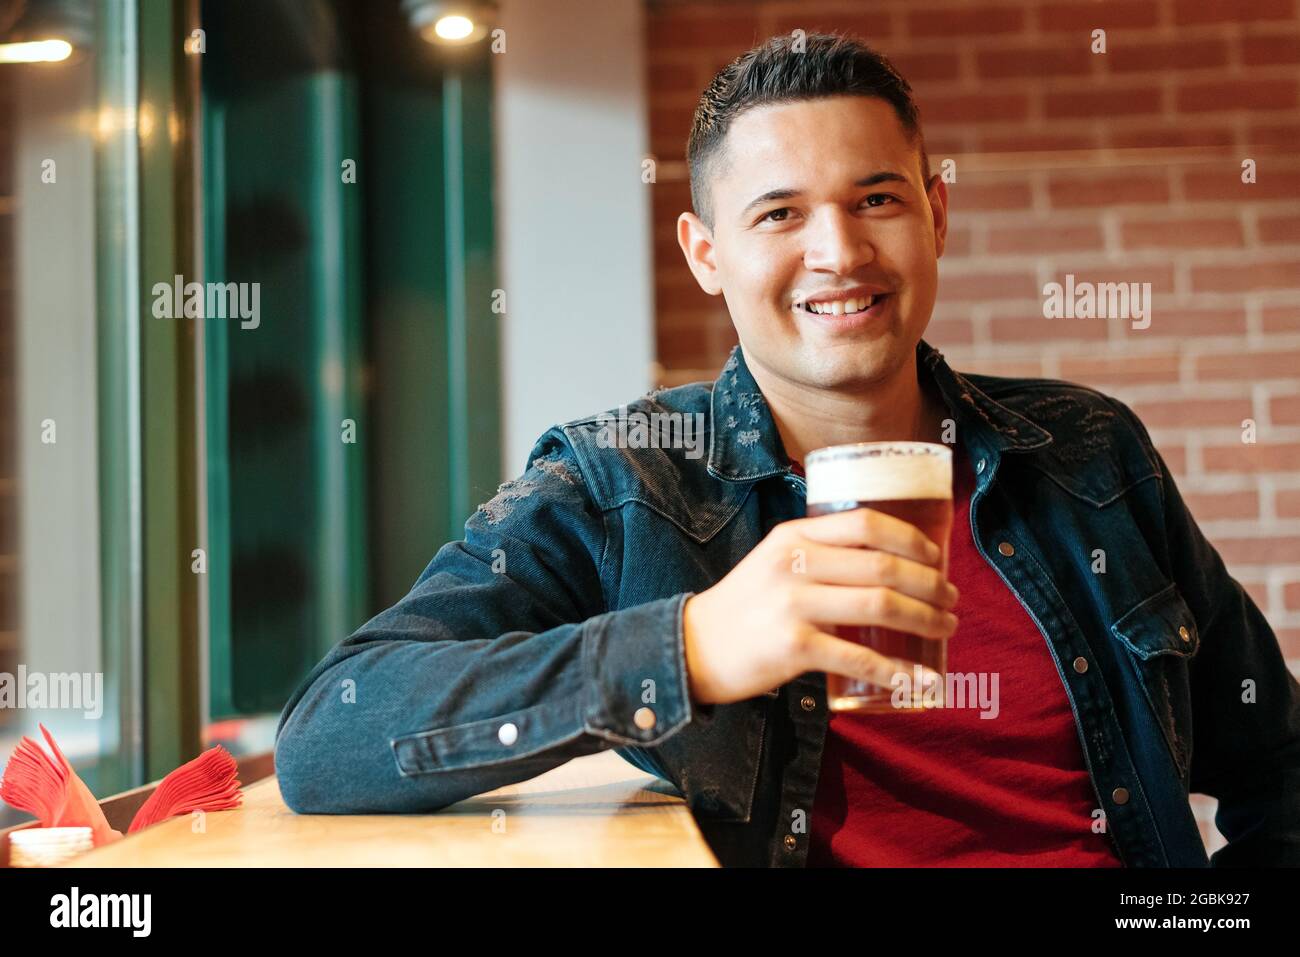 Felice attraente uomo ispanico gustando una birra fredda in un pub o bar alzando il suo bicchiere e dando alla macchina fotografica un caldo sorriso amichevole Foto Stock